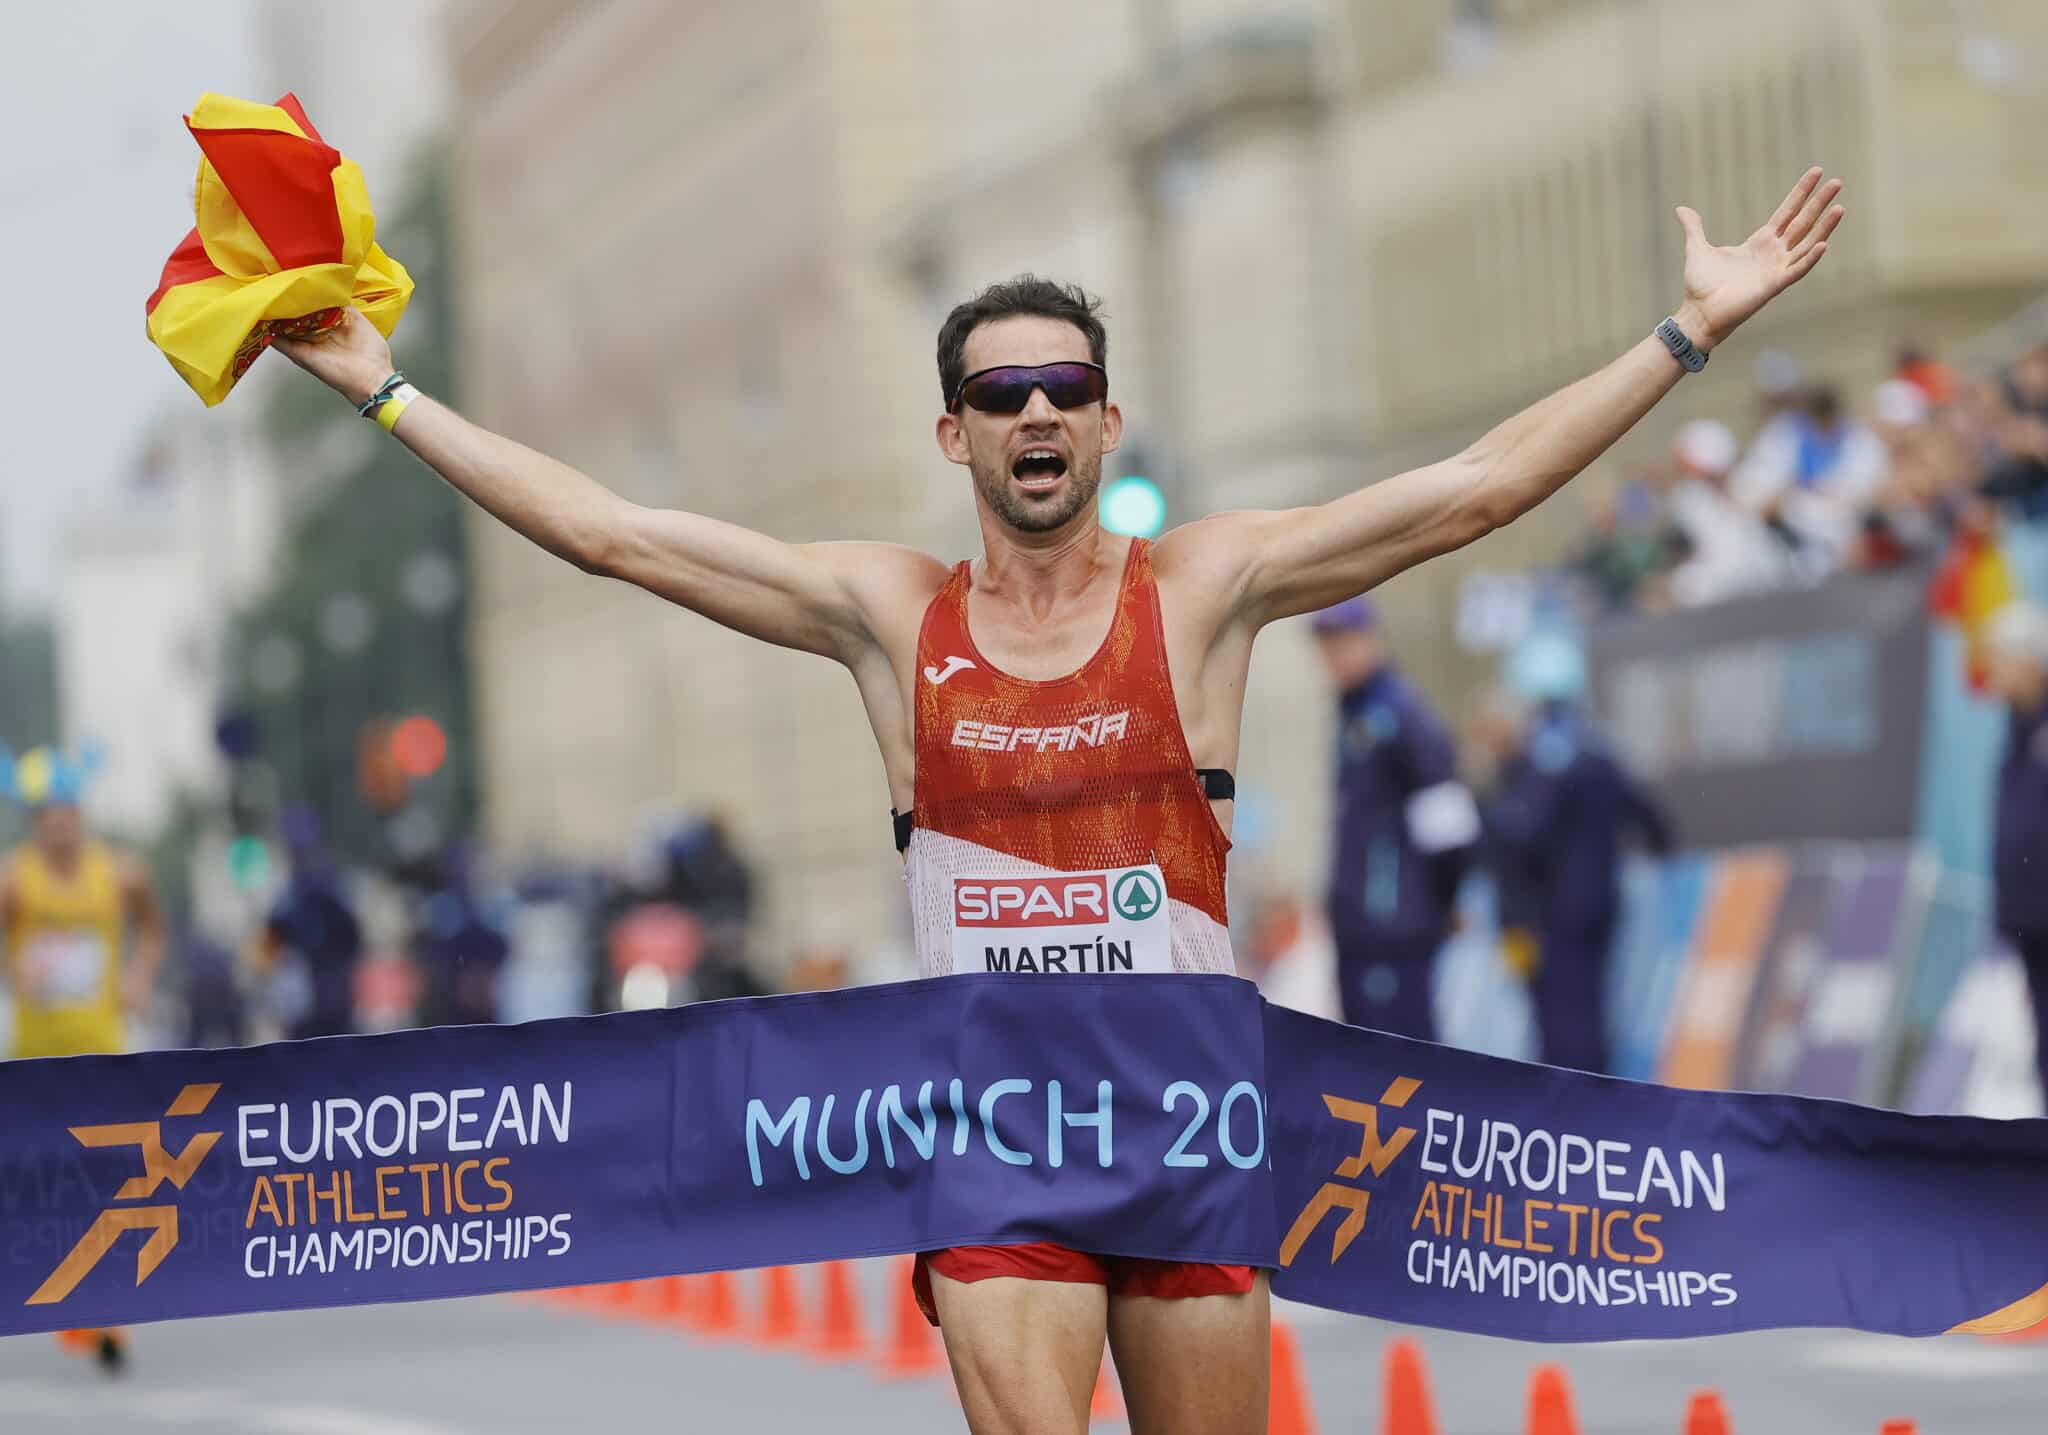 Álvaro Martín de España reacciona al cruzar la línea de meta para ganar la carrera masculina de 20 km durante los eventos de atletismo en el Campeonato Europeo de Munich 2022